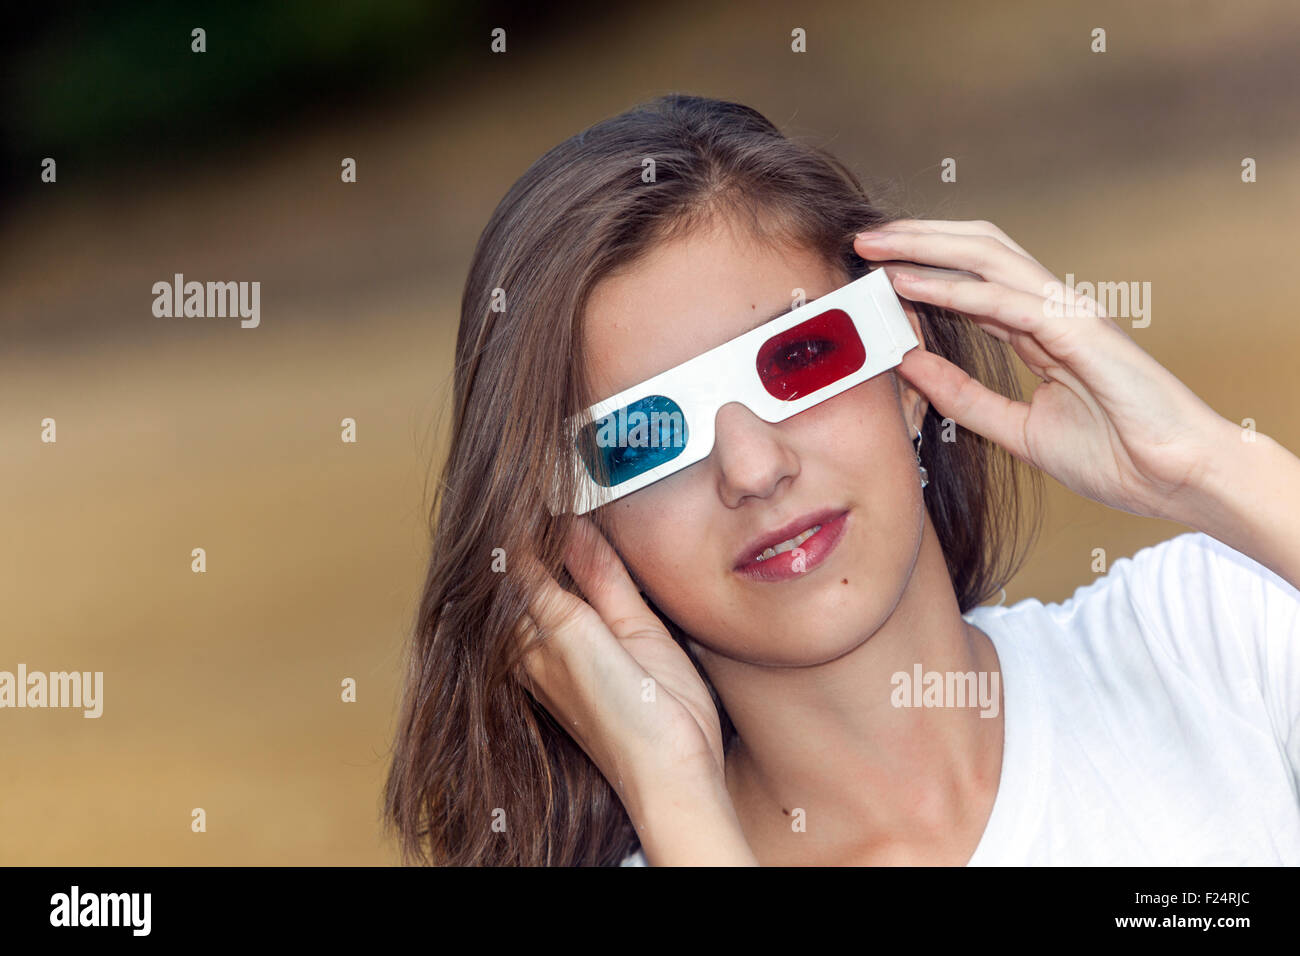 Jeune fille avec lunettes 3D teeneger style de vie, 15-16 ans Banque D'Images